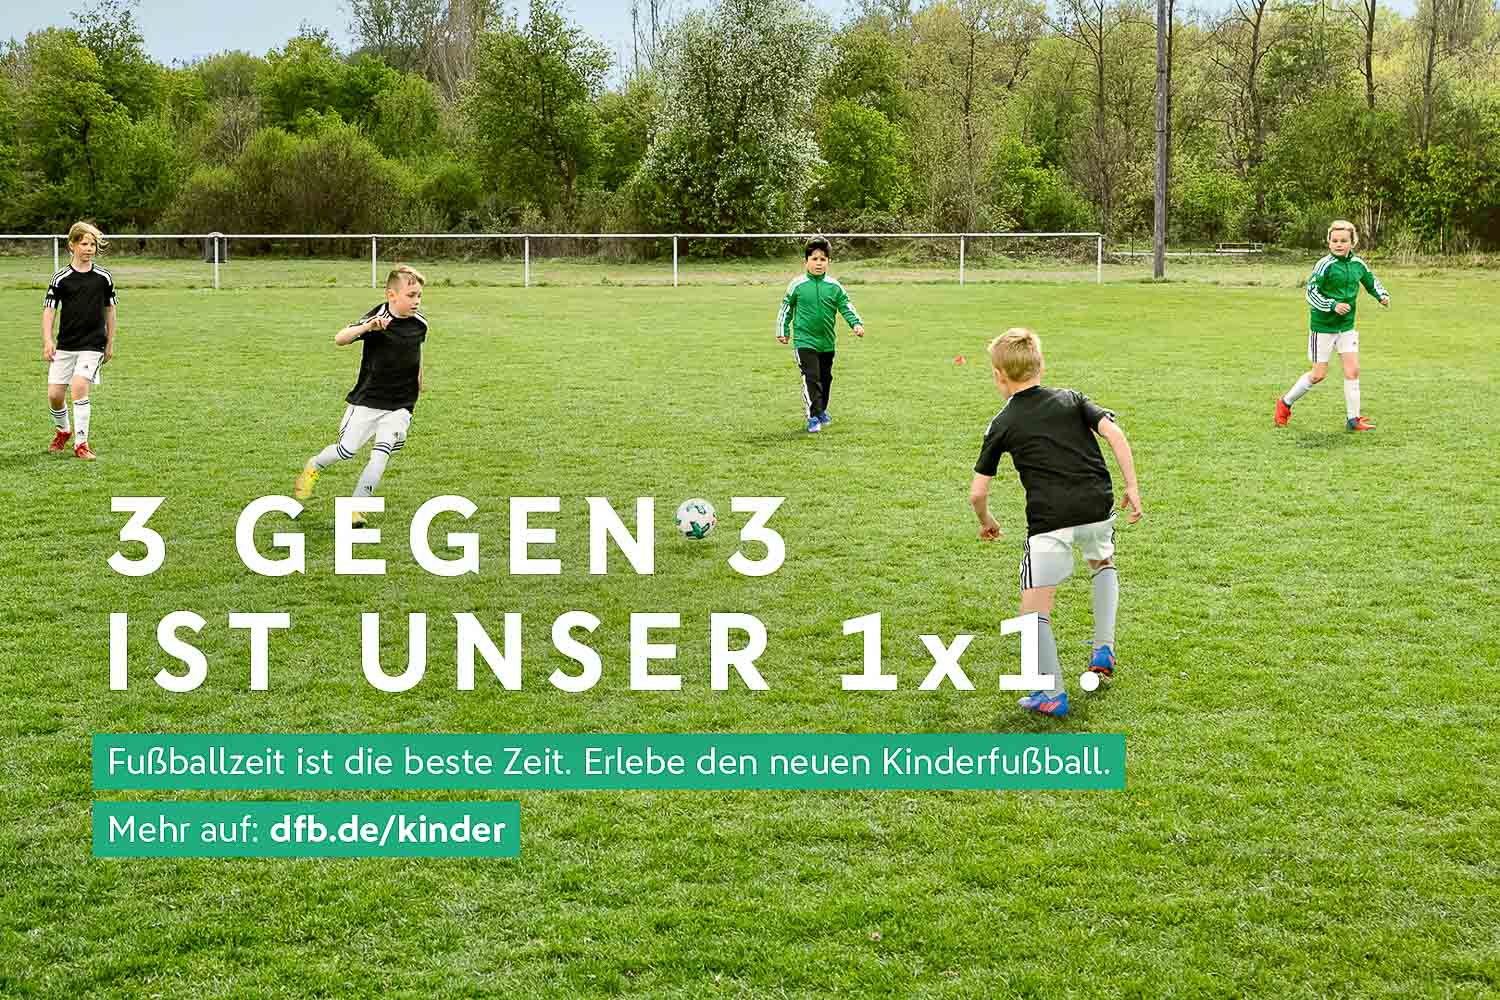 Auch in Bremen kommen die neuen Spielformen gut an. (Foto: DFB)